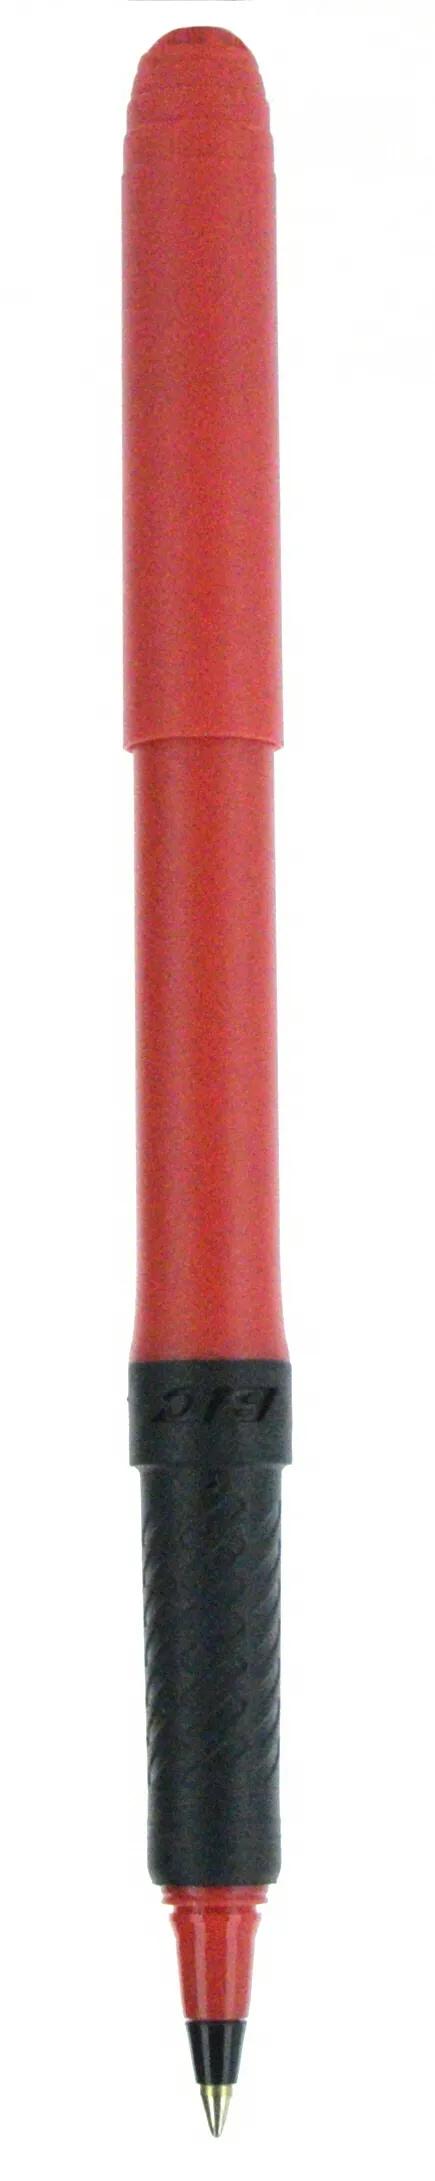 BIC® Grip Roller Pen 85 of 147